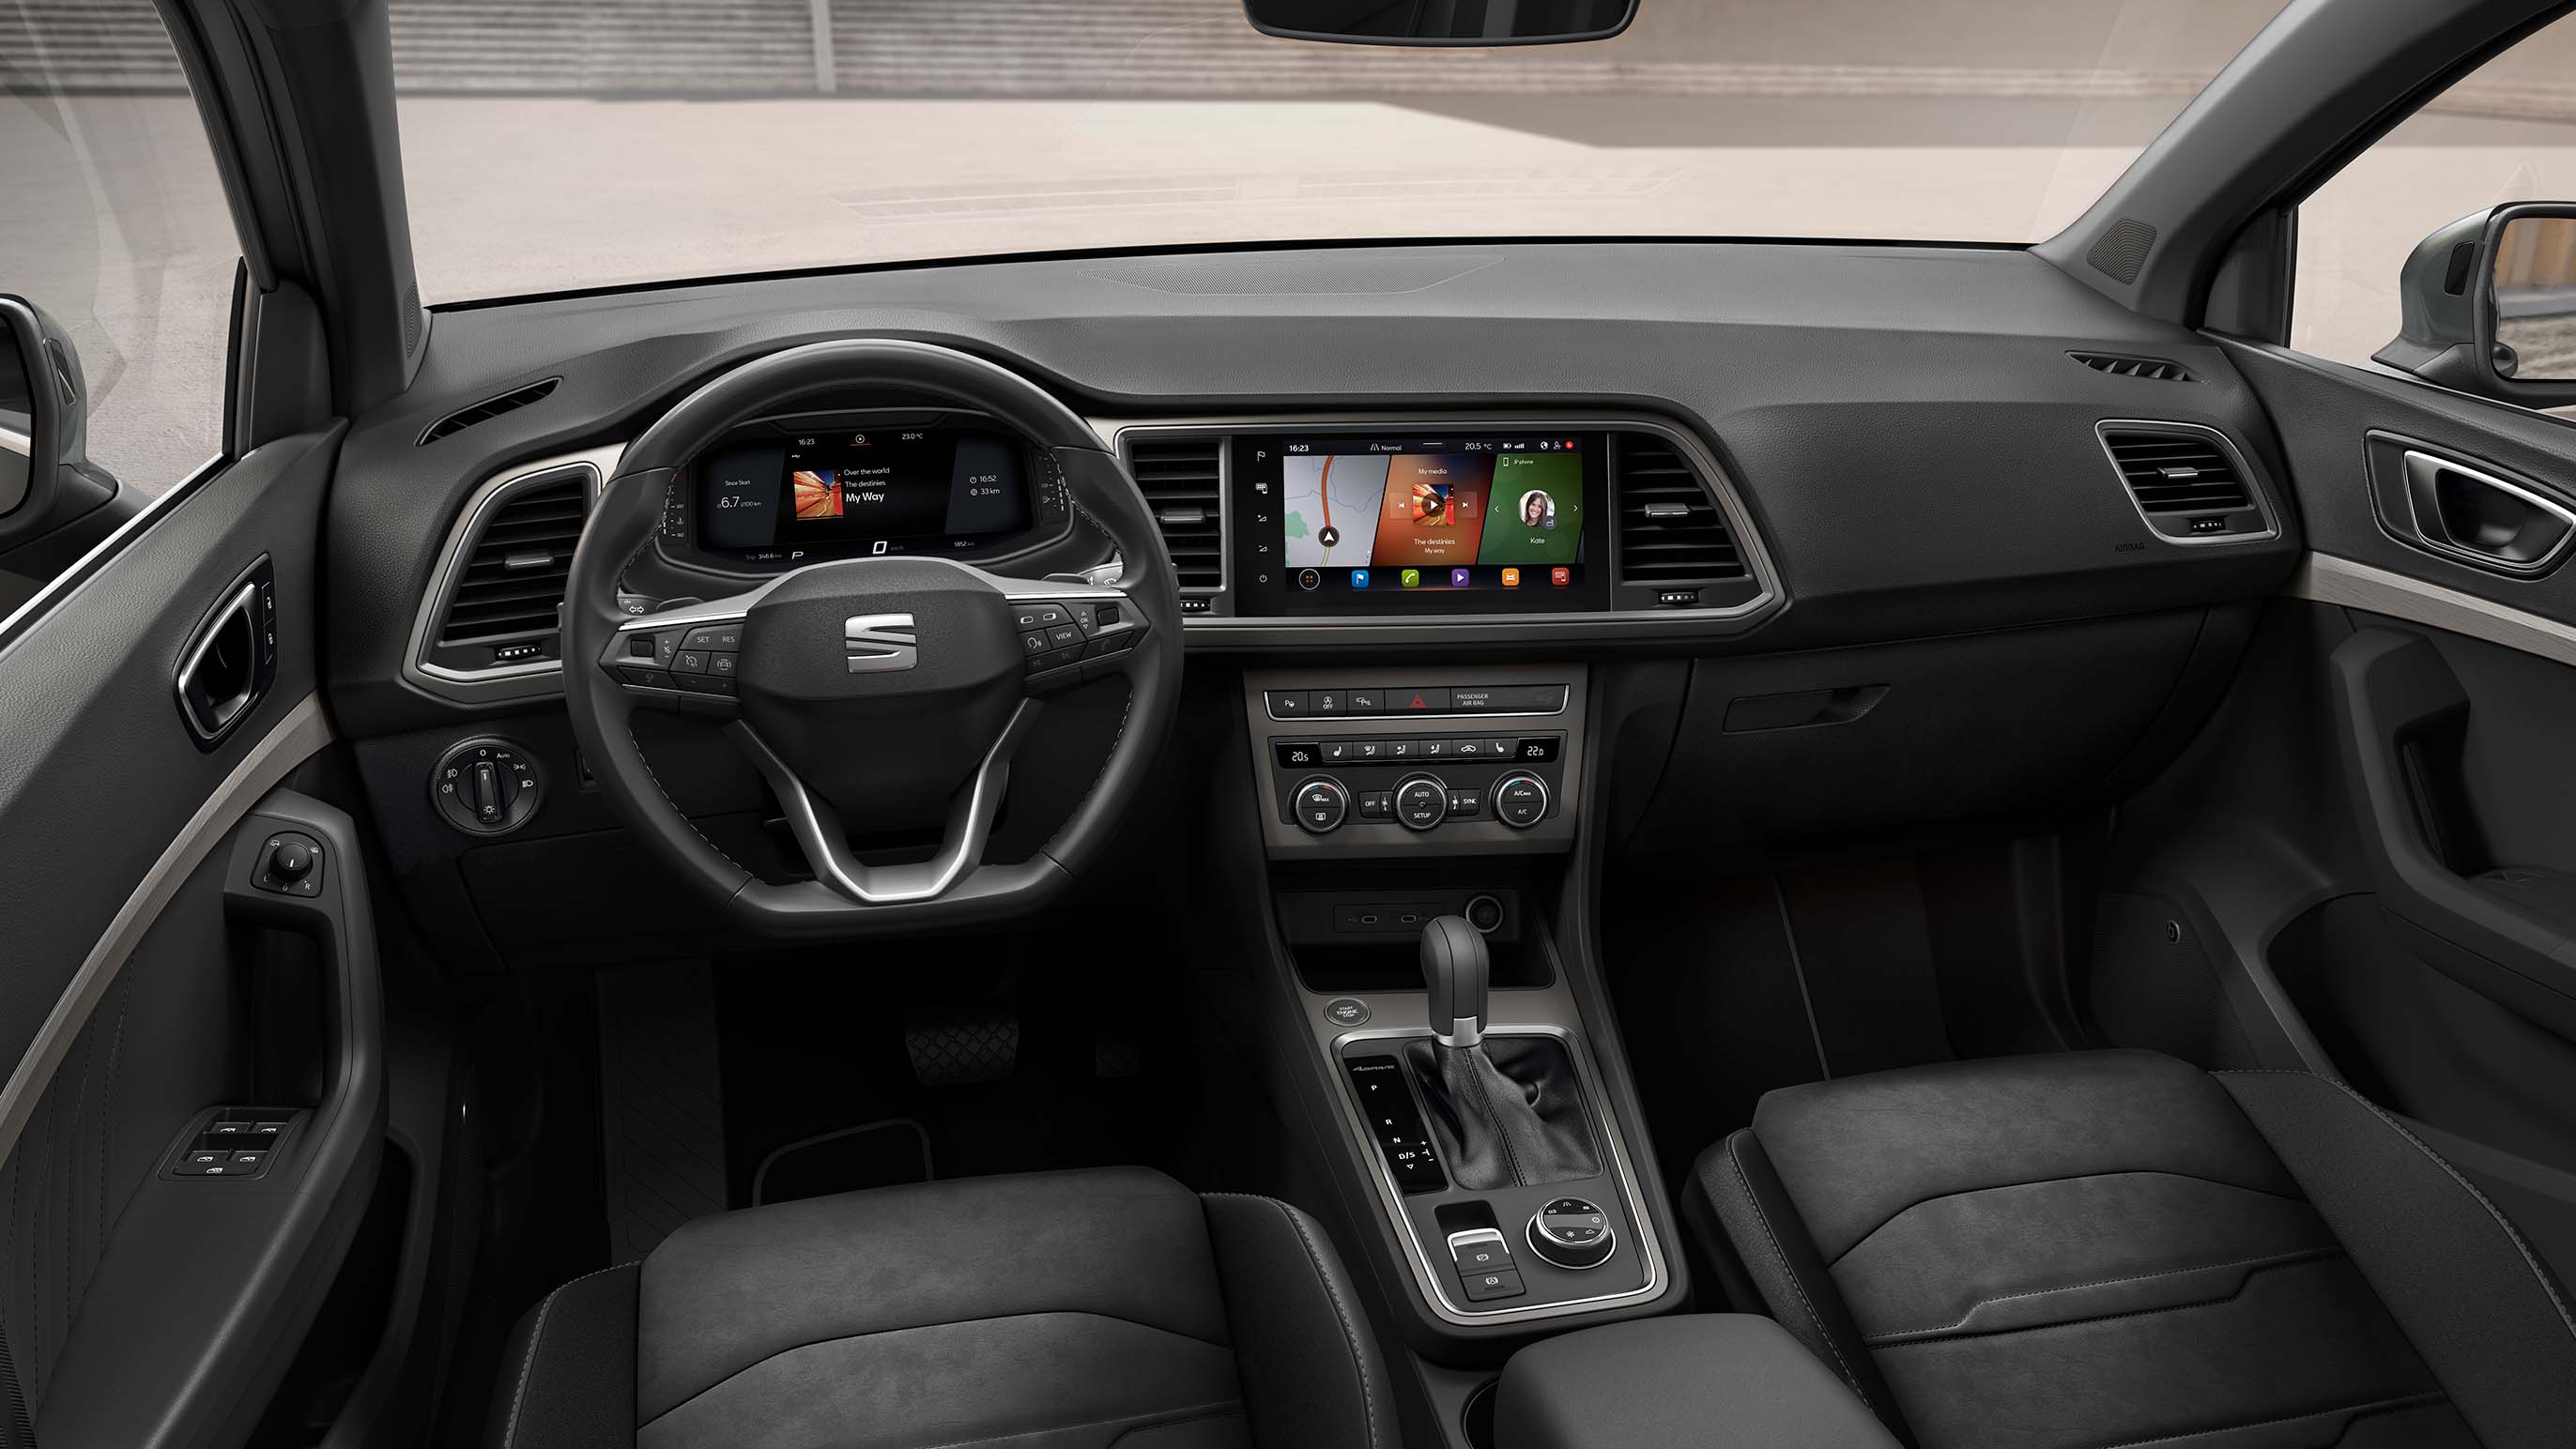 SEAT Ateca 2020 SUV: Design Features